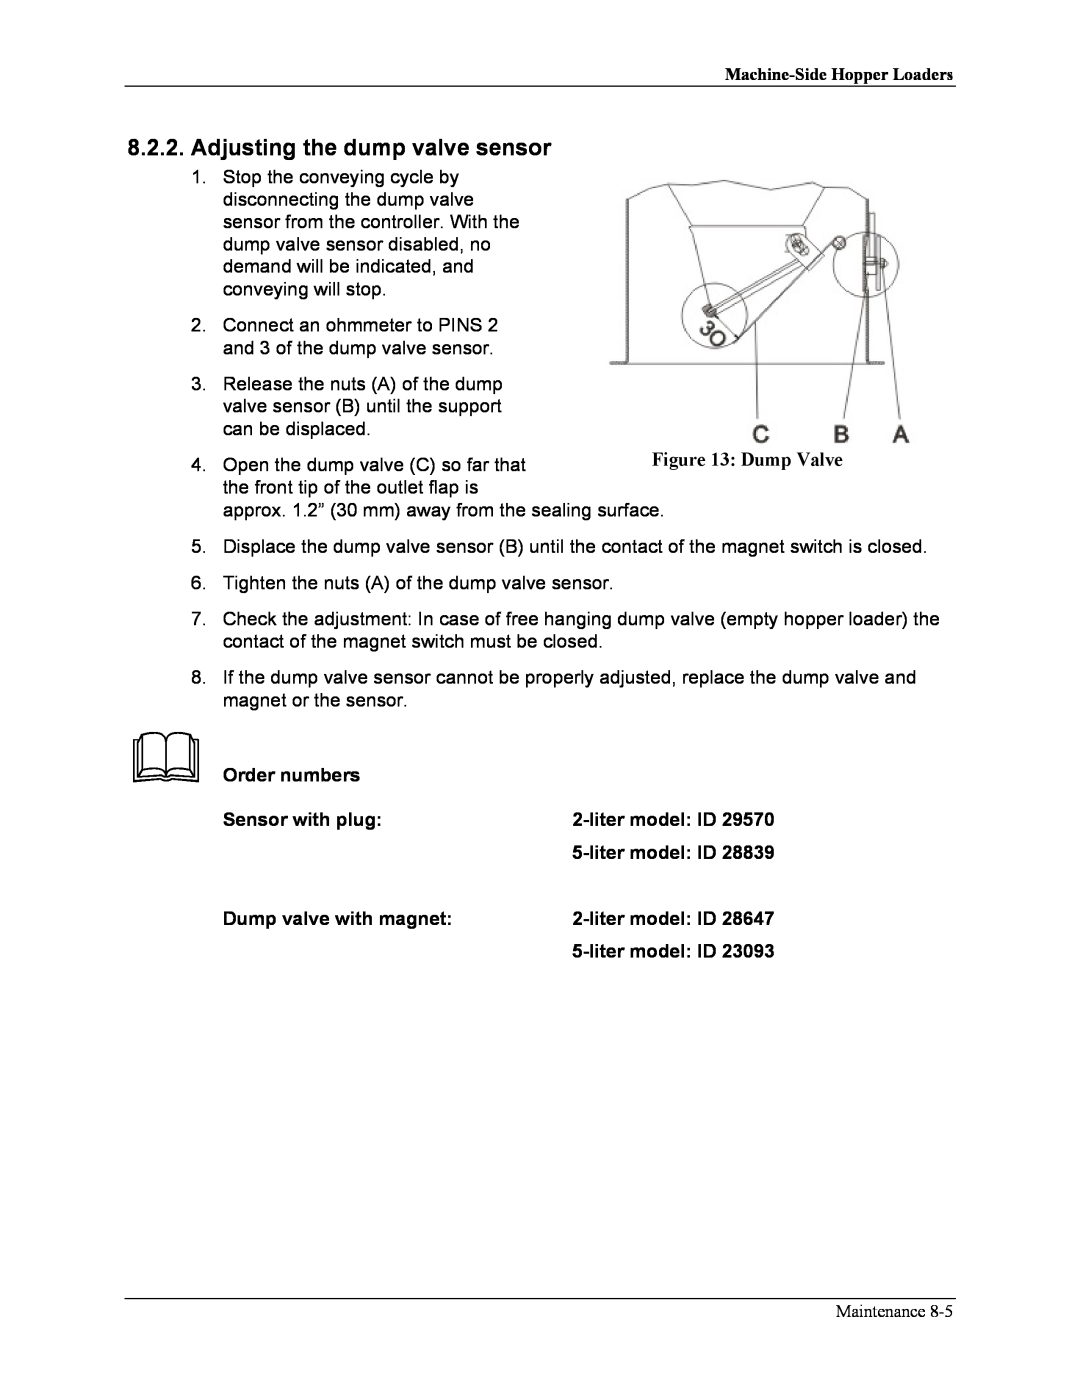 Sterling sse manual Adjusting the dump valve sensor, Order numbers, Sensor with plug, litermodel ID, Dump valve with magnet 